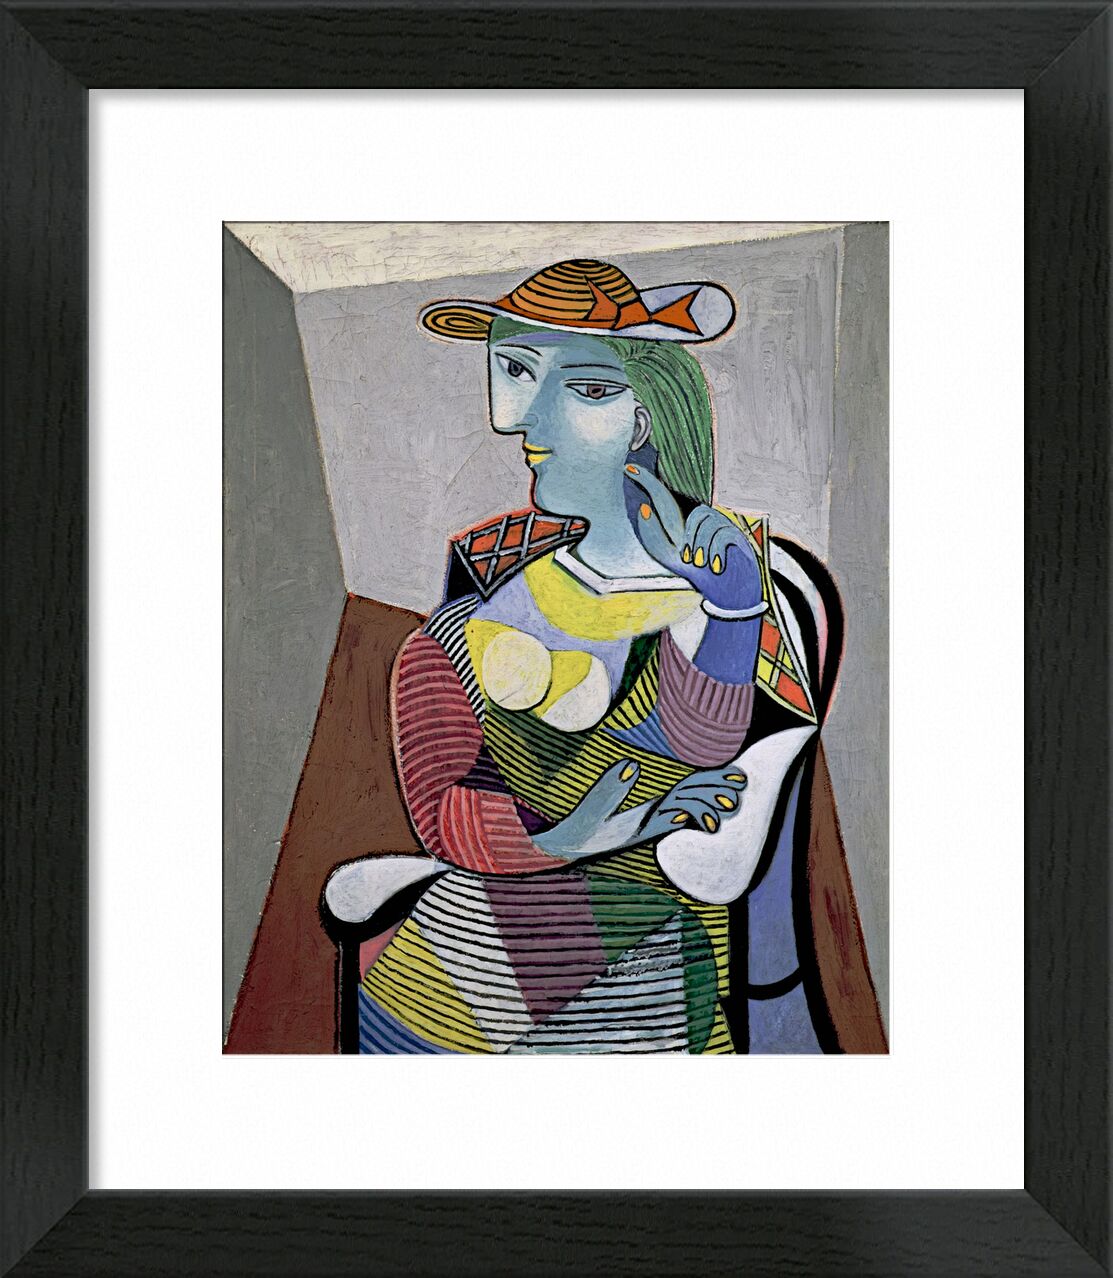 Portrait of Marie-Therese - Picasso desde Bellas artes, Prodi Art, picasso, retrato, abstracto, pintura